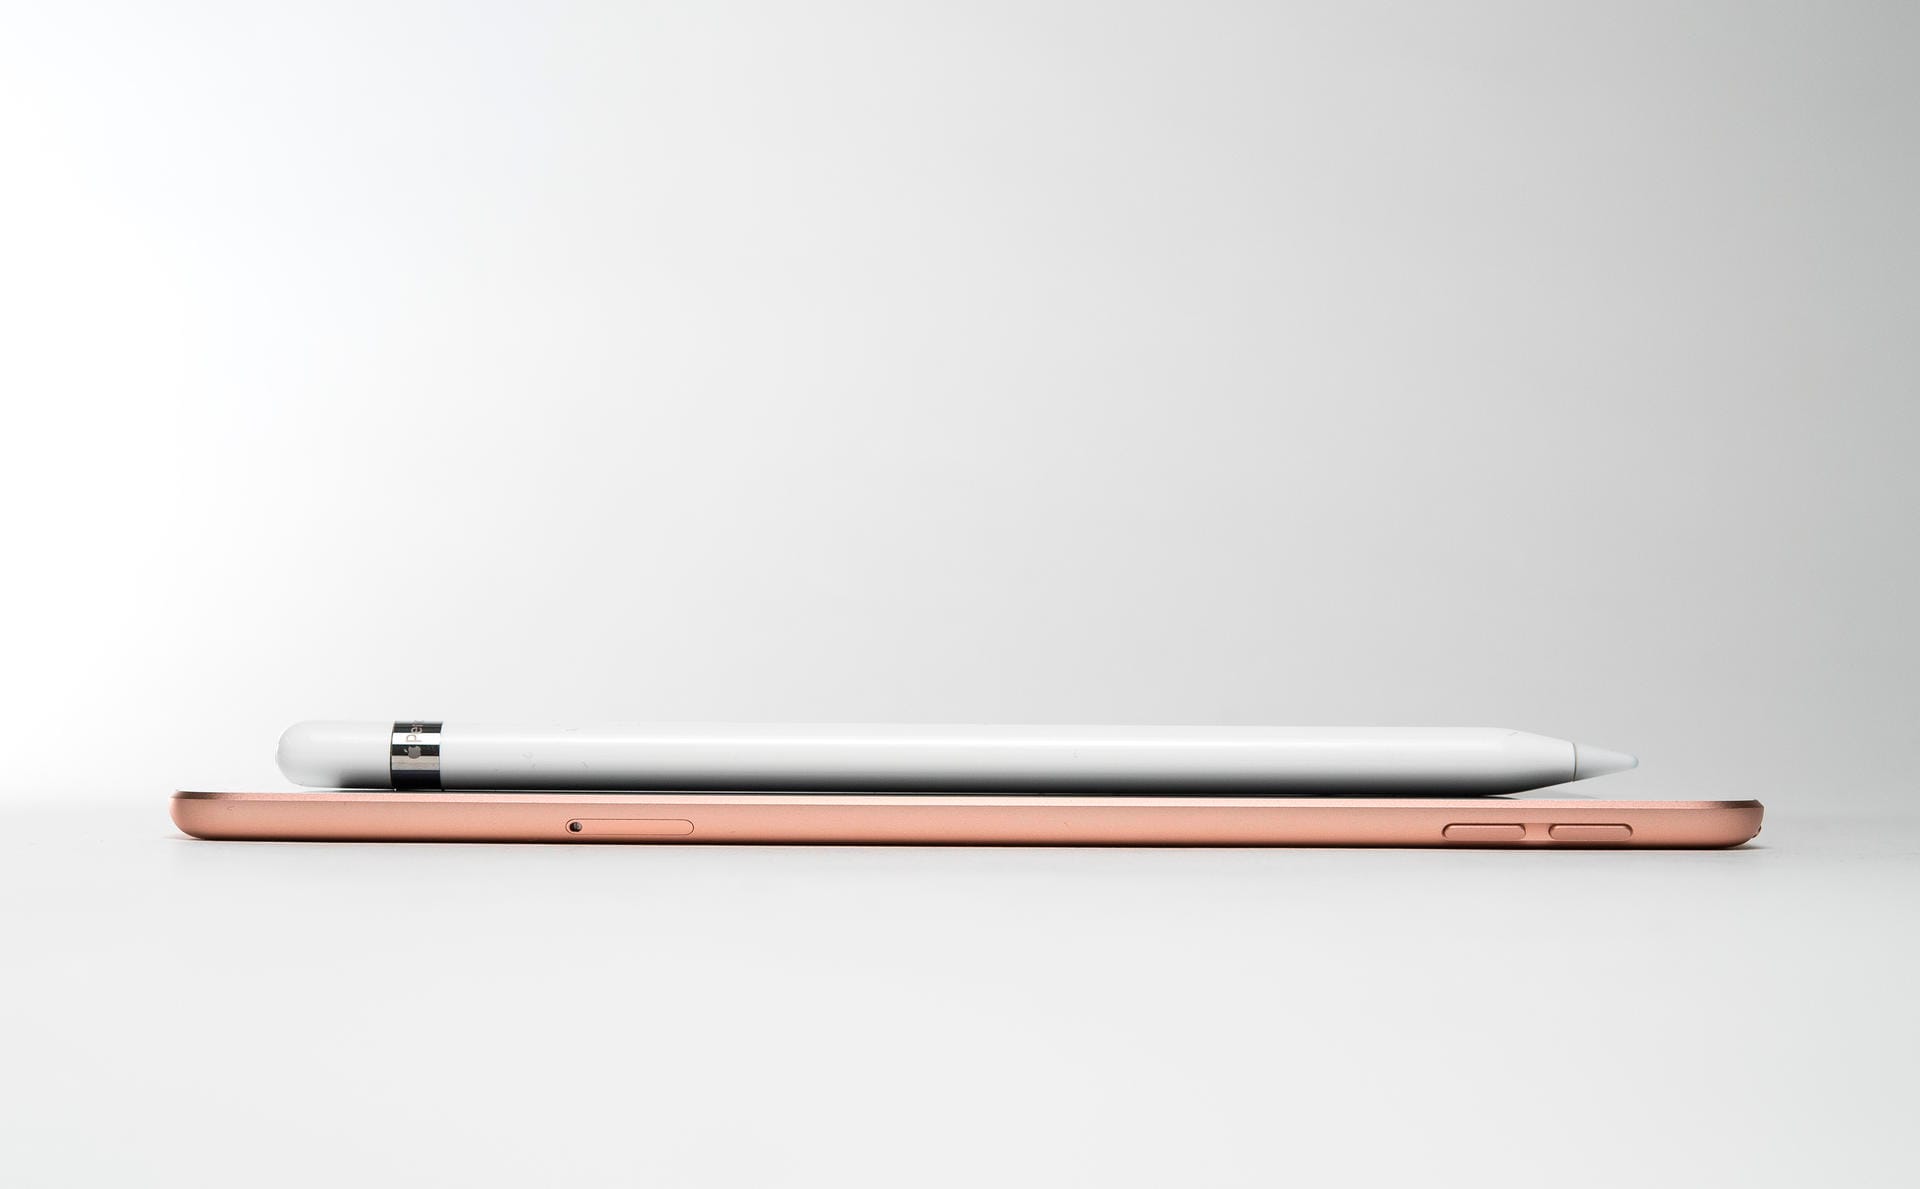 iPad mini liegend mit Apple Pencil: Den optional erhältlichen Apple Pencil (99 Euro) müssen Nutzer des iPad mini am Lightning-Stecker des Tablets laden.